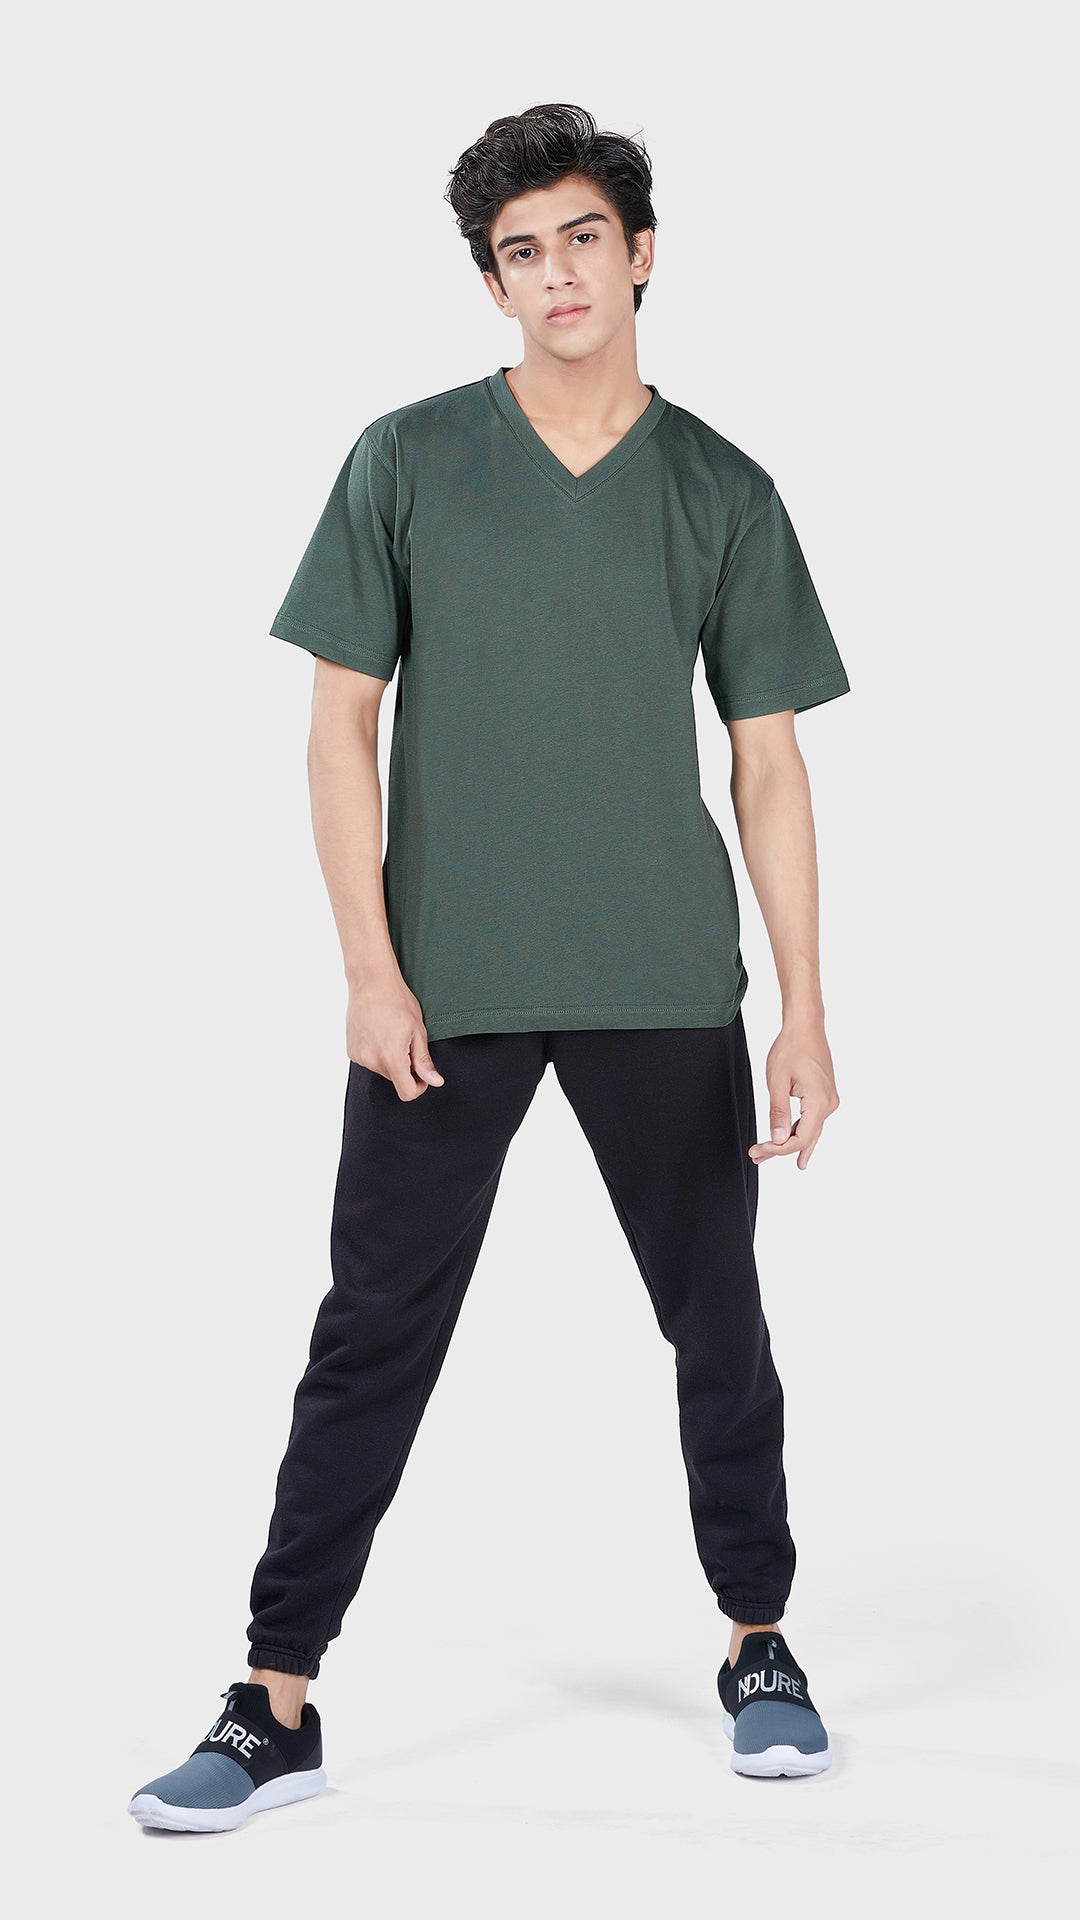 Men's Basic V Half Sleeves T-Shirt